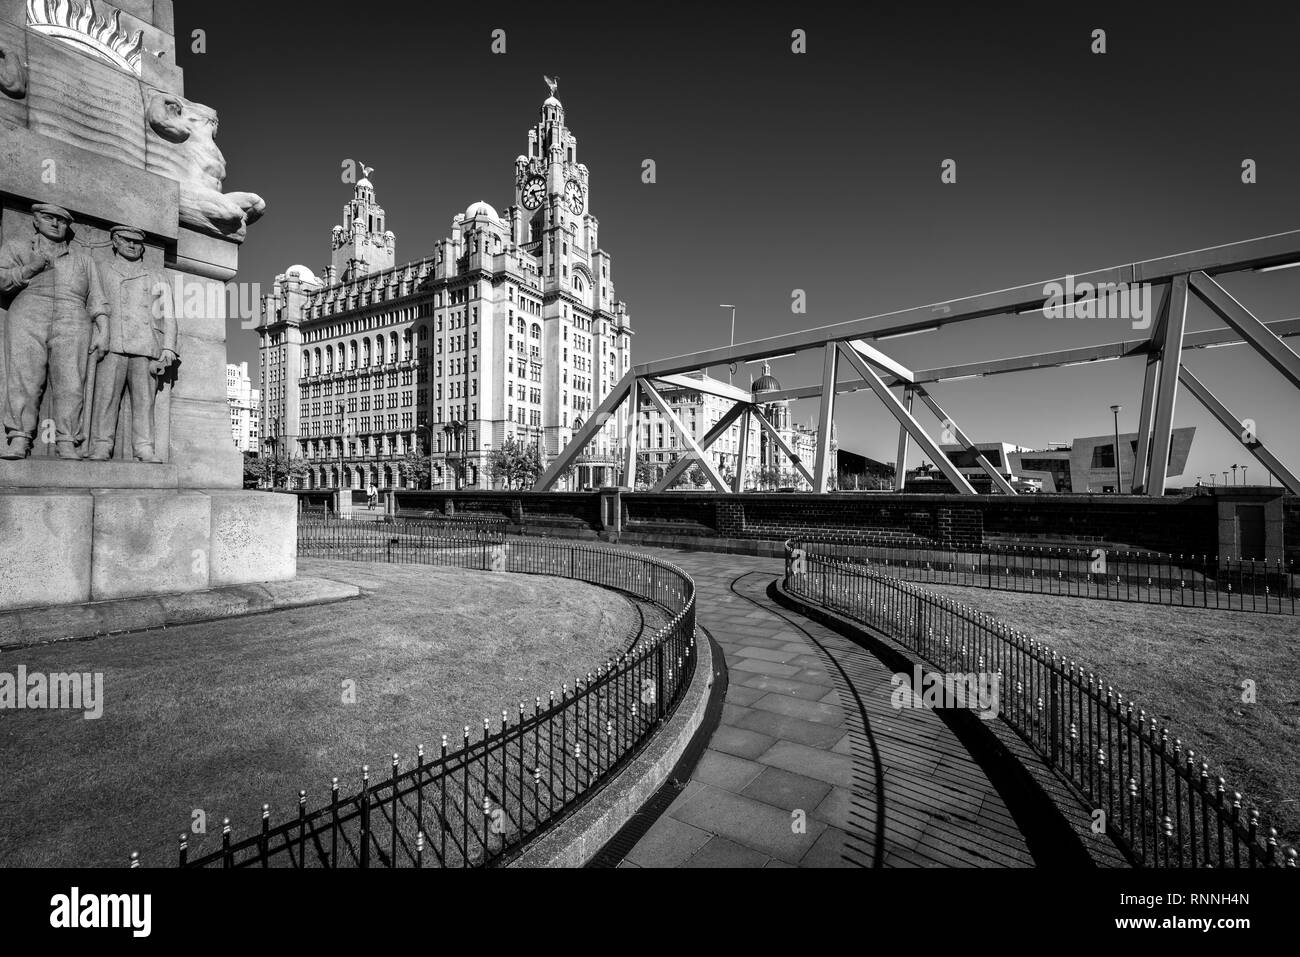 Historique de Liverpool Liver Building et de l'horloge, Liverpool, Angleterre, Royaume-Uni. Banque D'Images